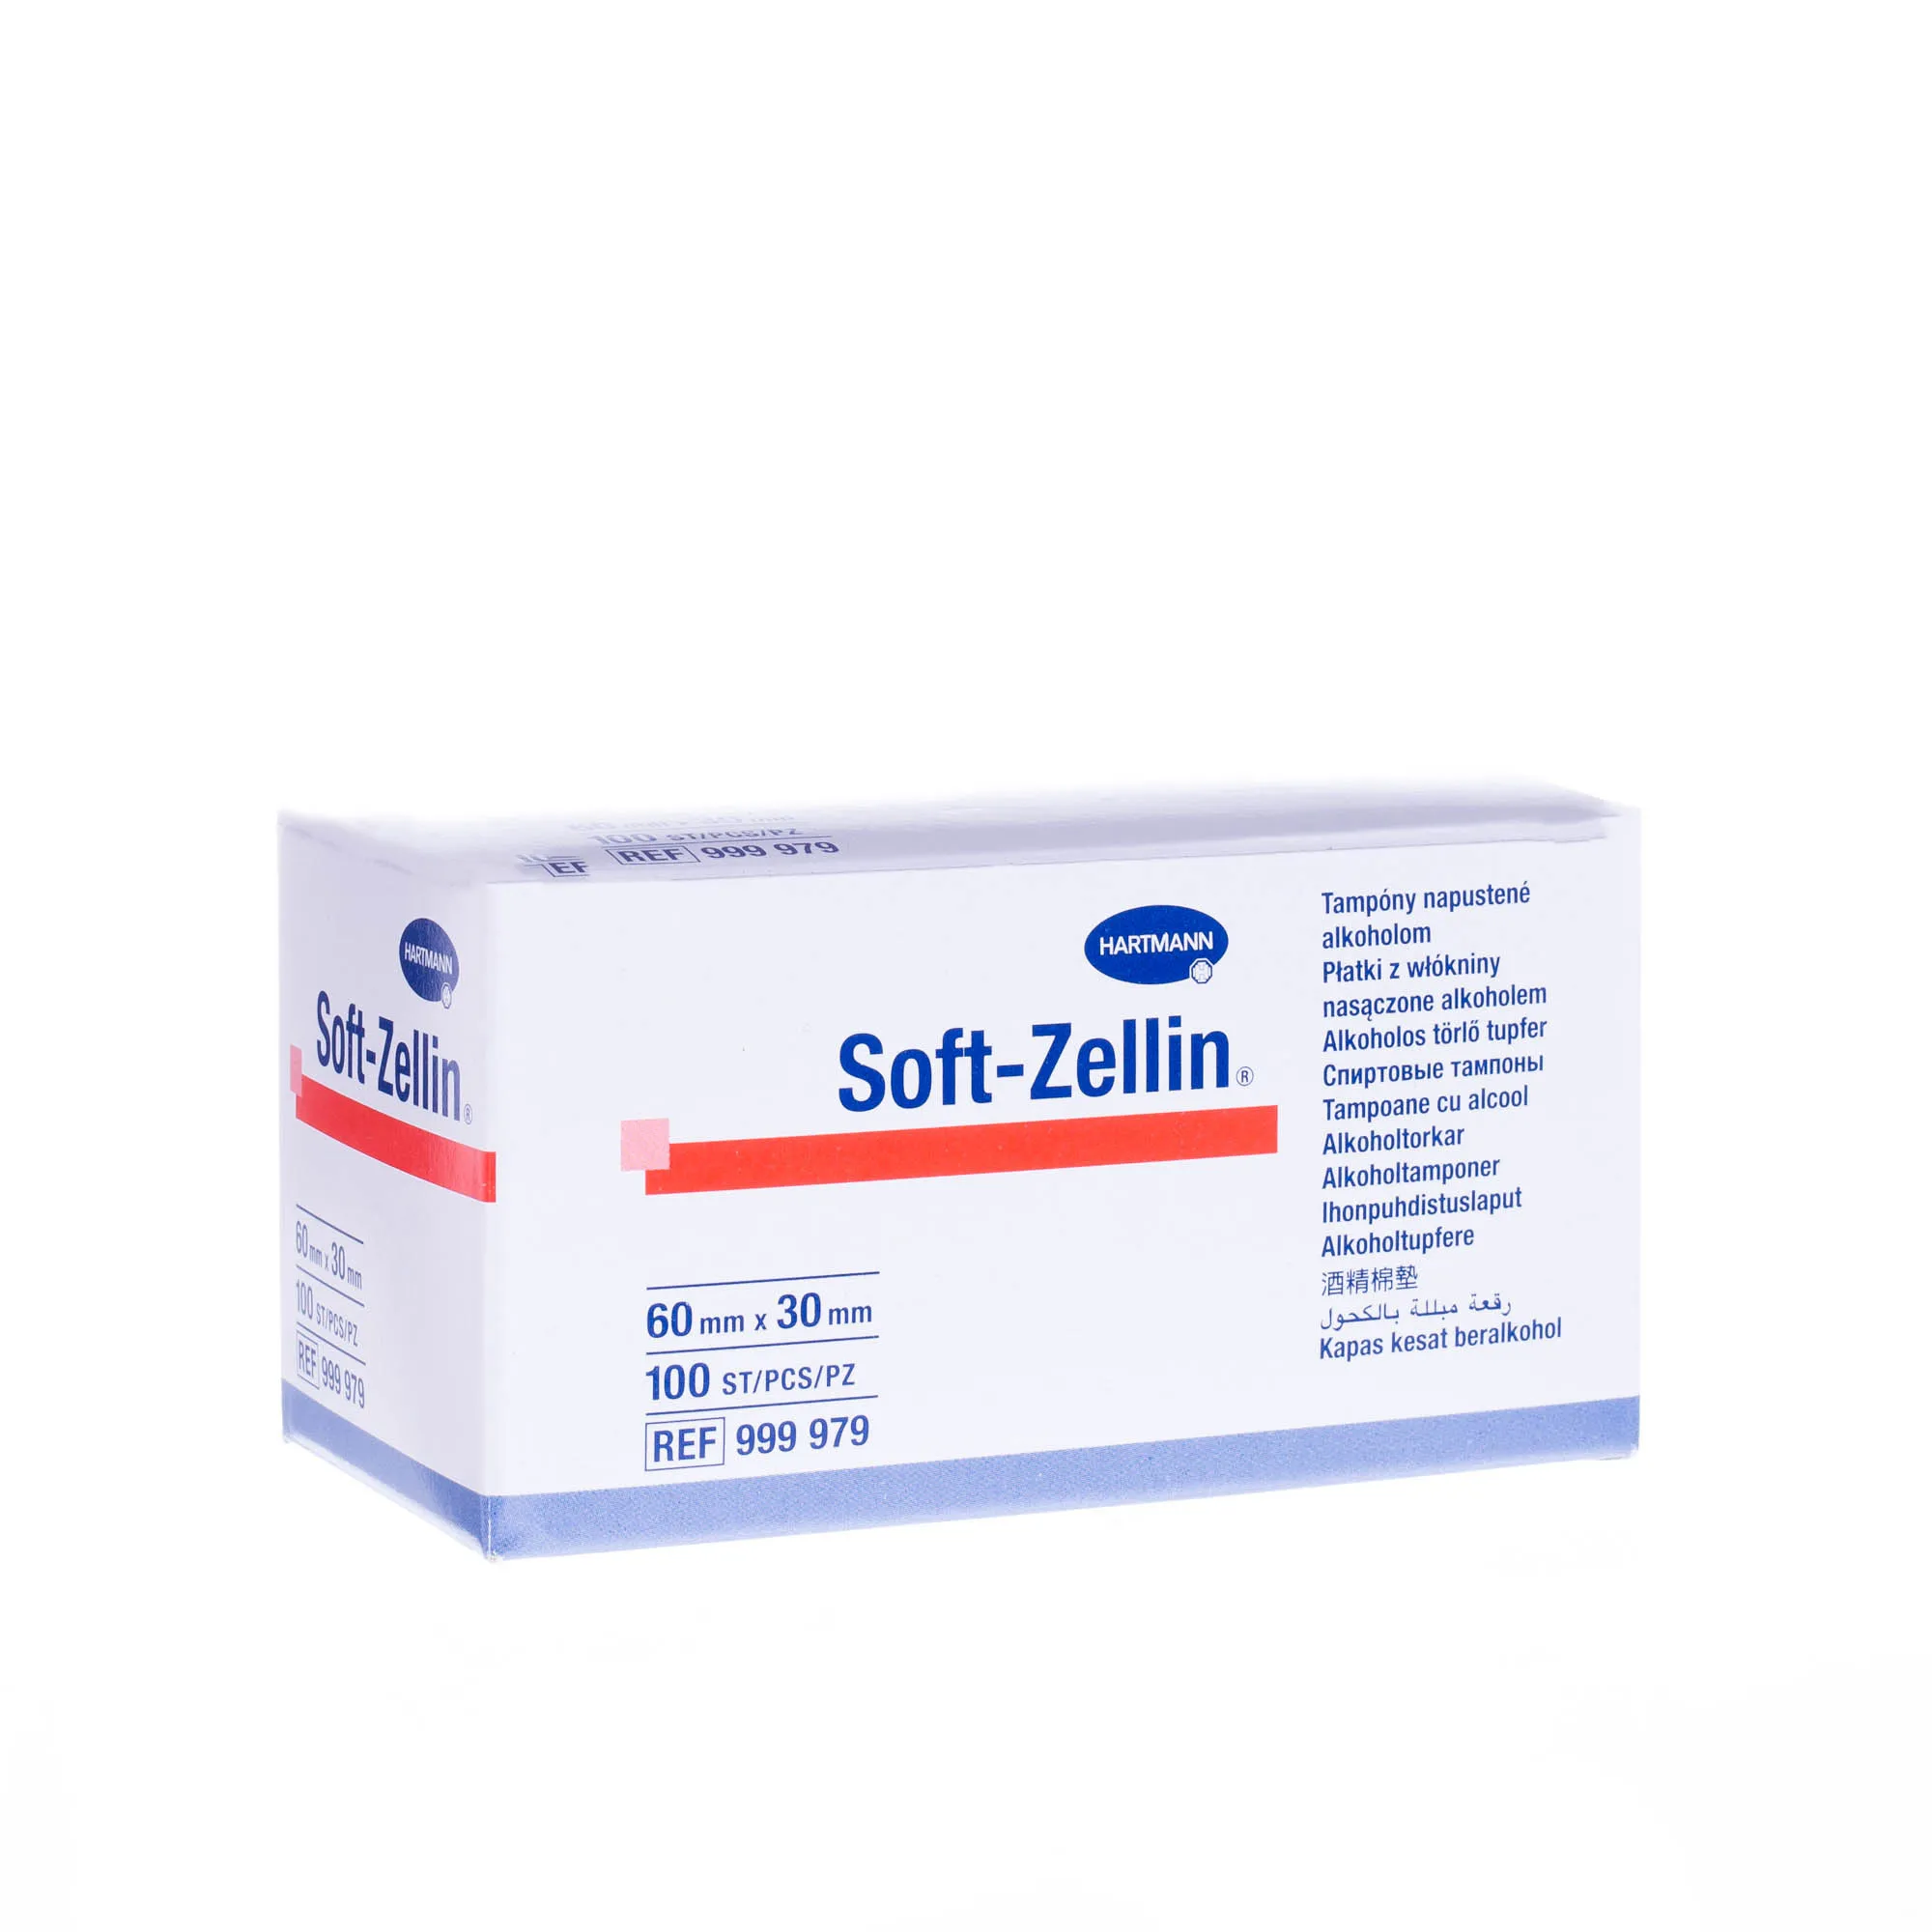 Soft-Zellin, kompresy do dezynfekcji, 60 mm x 30 mm, 100 sztuk